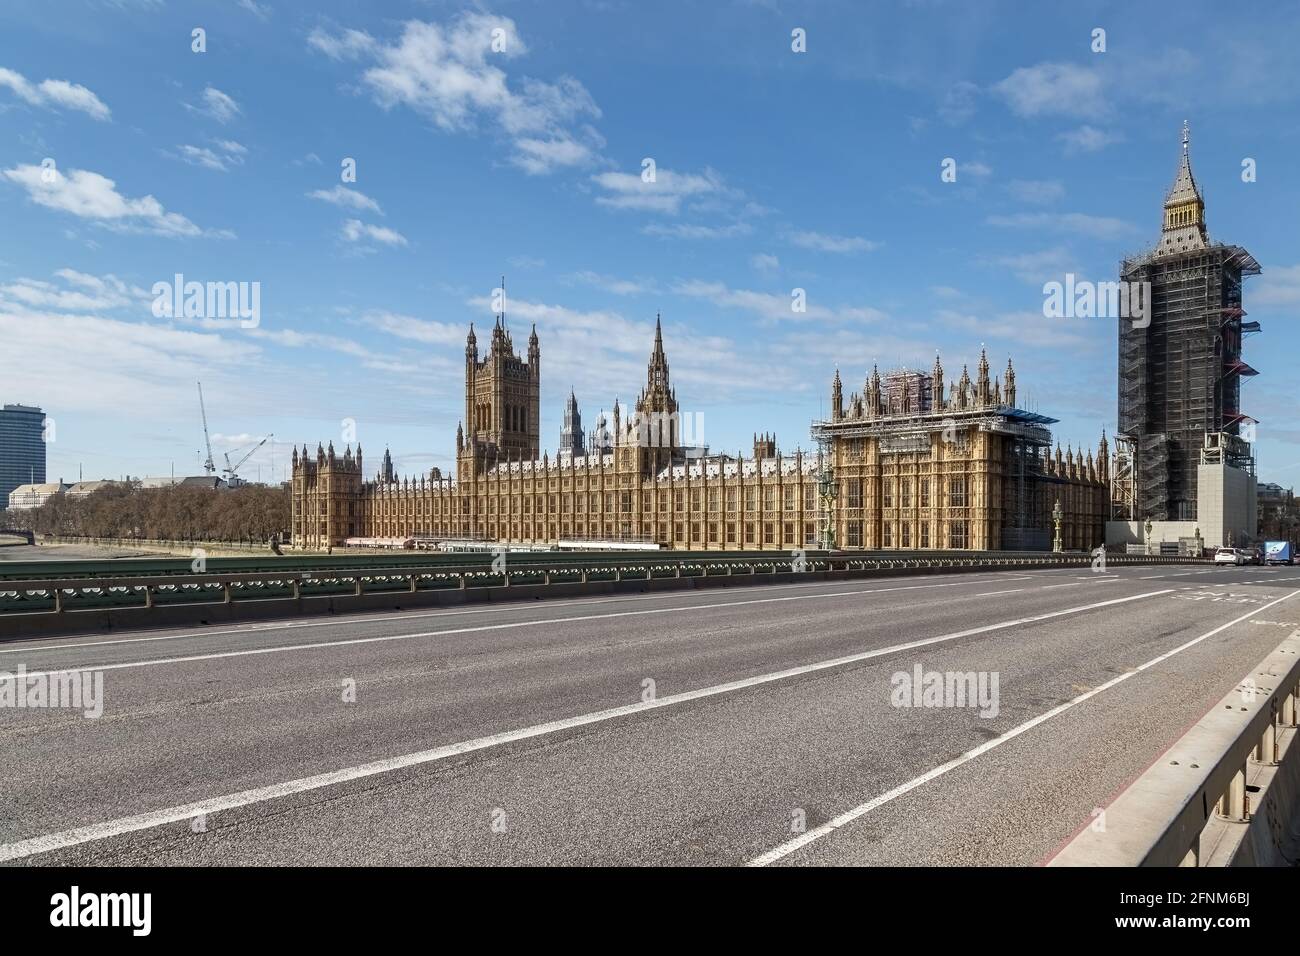 Les chambres du Parlement du pont de Westminster, qui est libre de personnes et de la circulation, bien que certaines personnes soient visibles à l'extrémité du pont. Banque D'Images